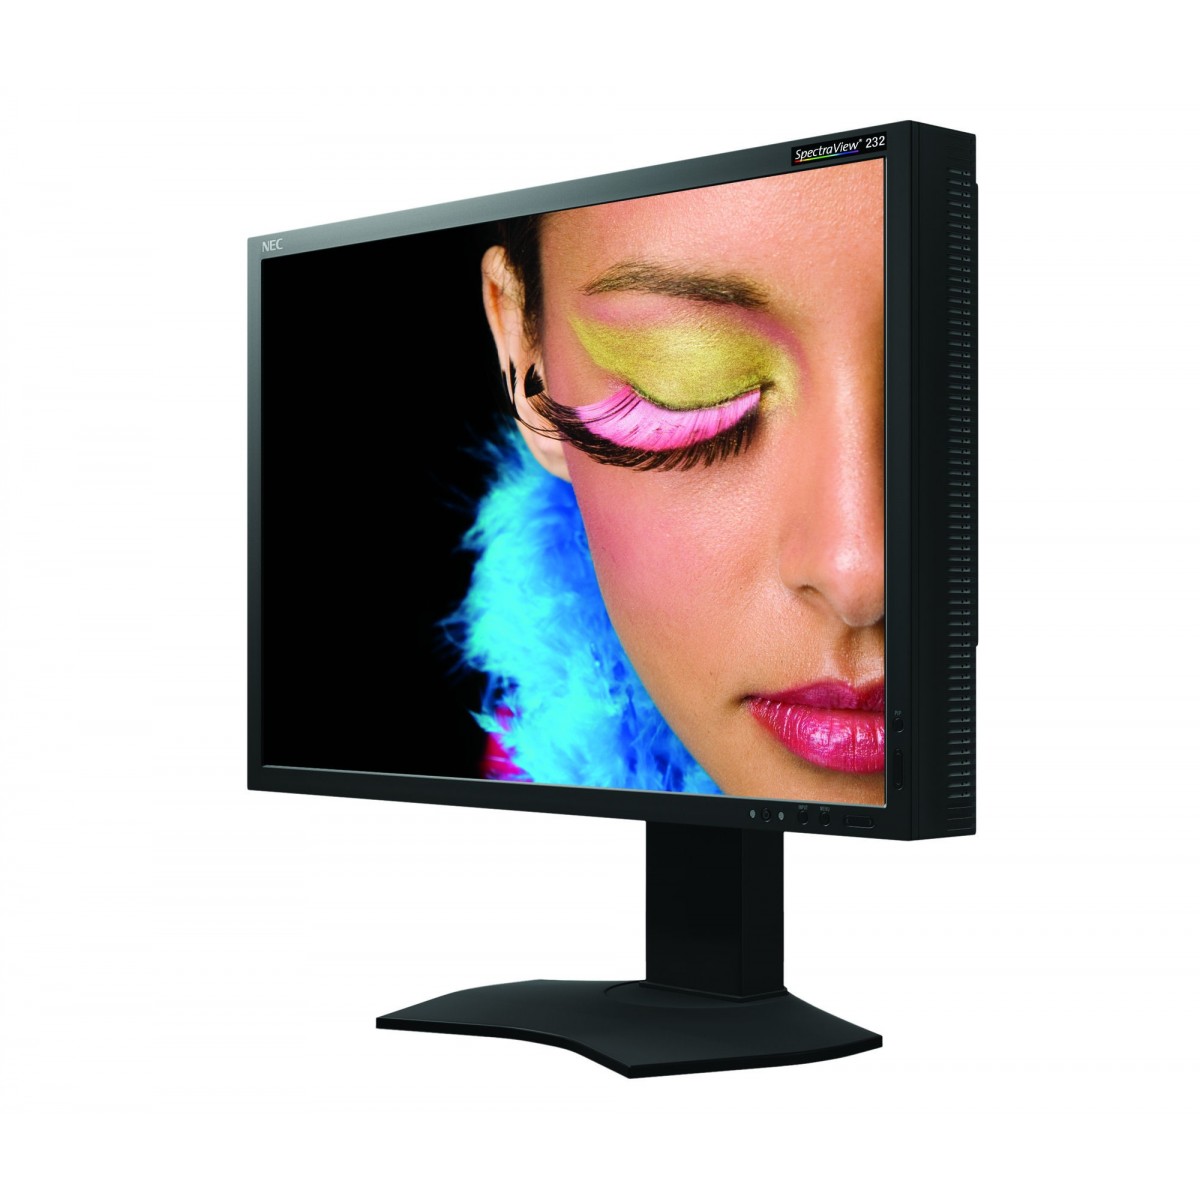 NEC Display SpectraView 232 58.4 cm/23 Flat Screen - 1,920x1,080 IPS